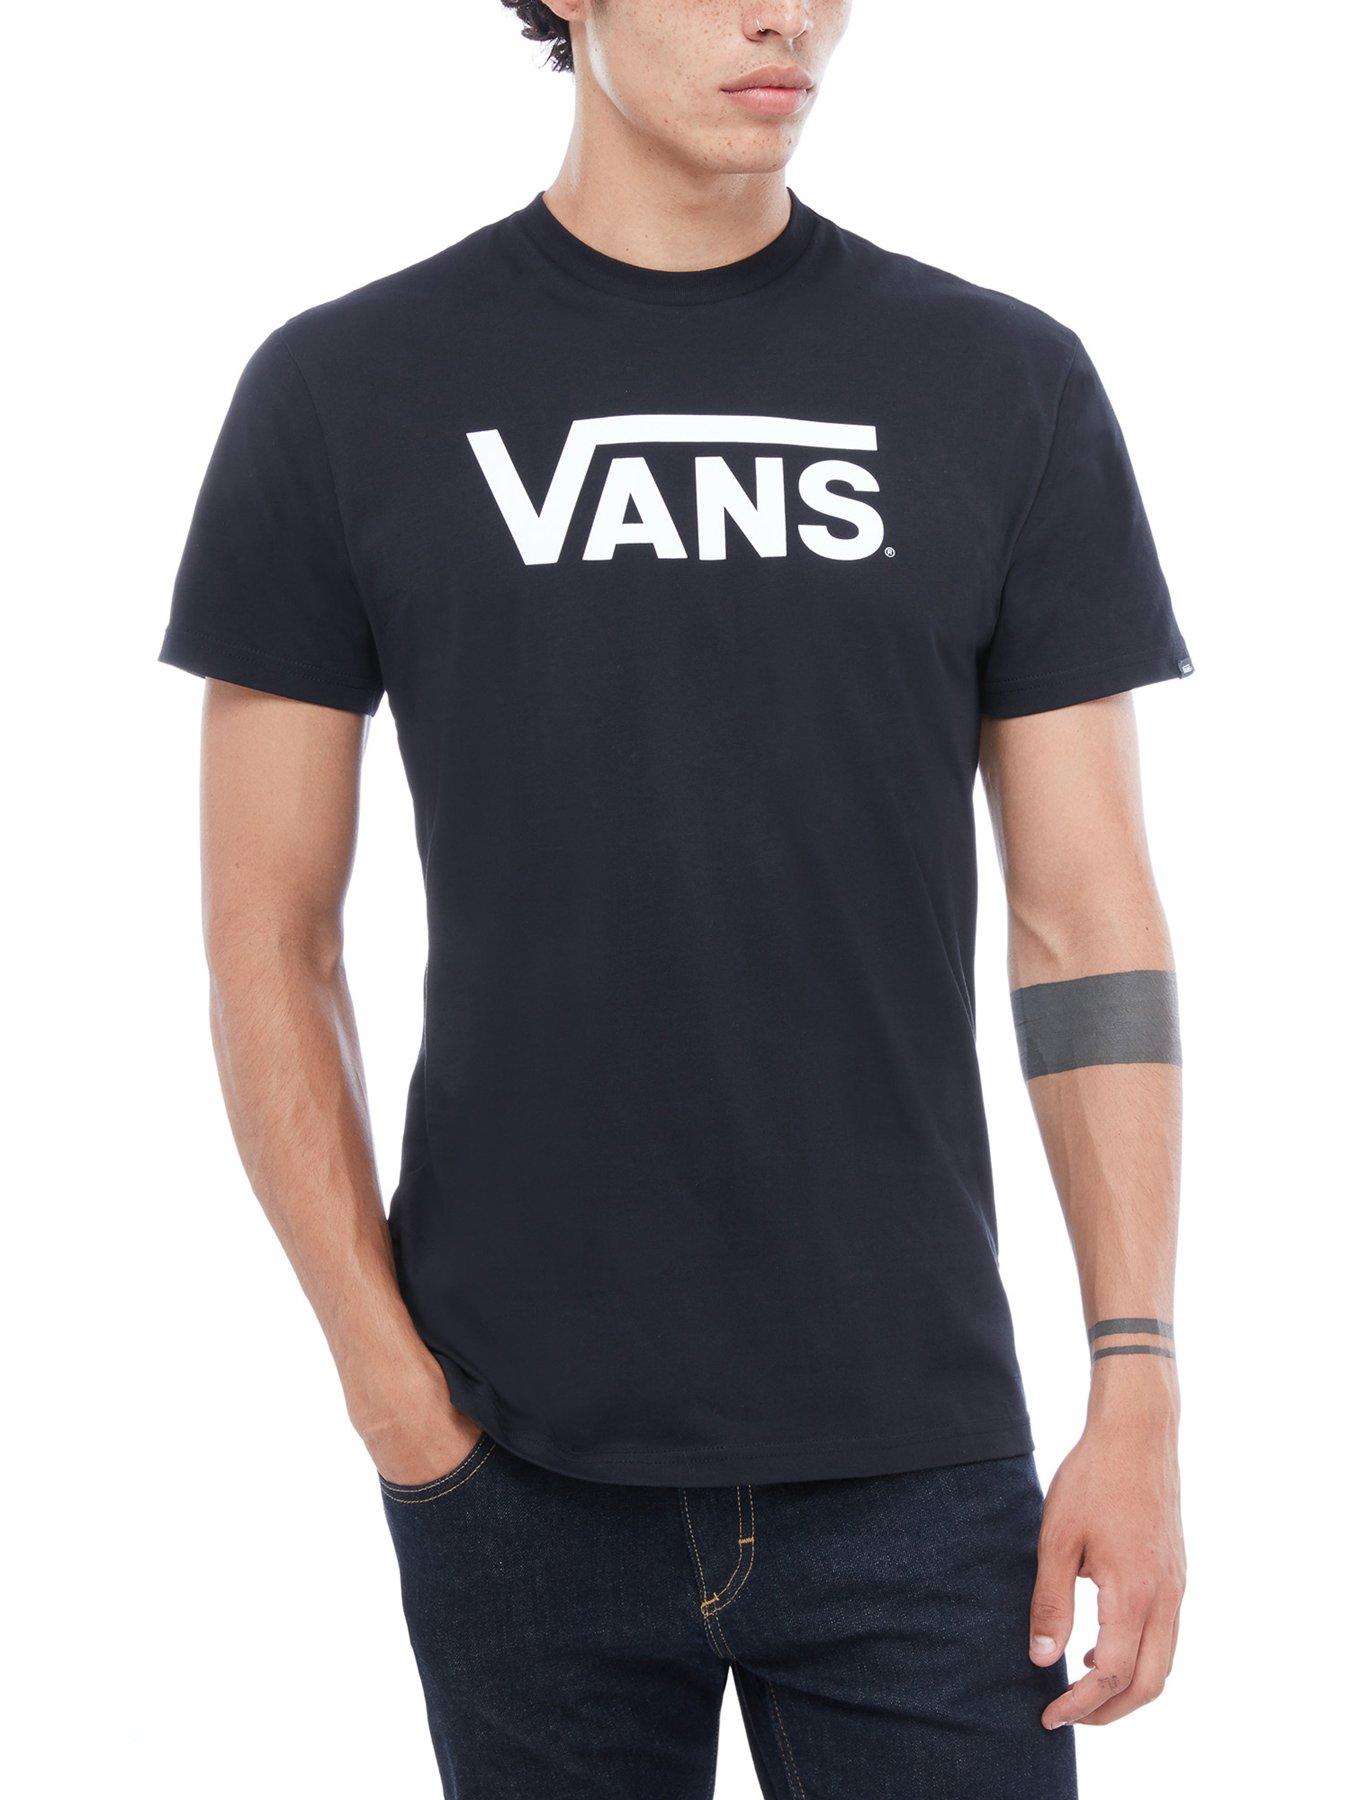 vans tshirt for men